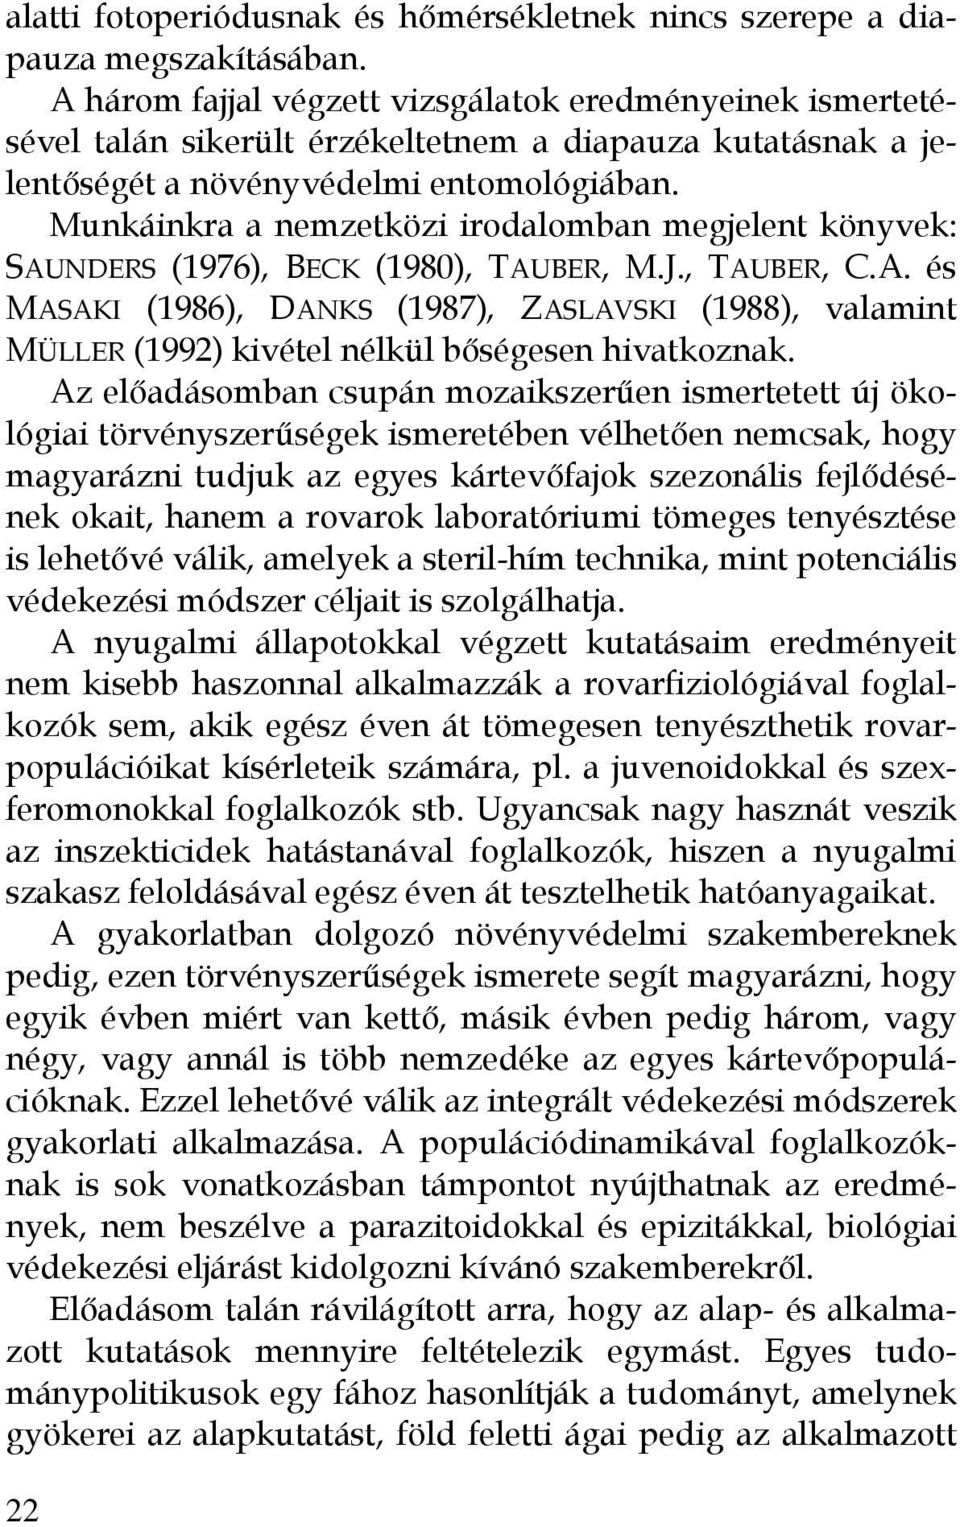 Munkáinkra a nemzetközi irodalomban megjelent könyvek: SAUNDERS (1976), BECK (1980), TAUBER, M.J., TAUBER, C.A. és MASAKI (1986), DANKS (1987), ZASLAVSKI (1988), valamint MÜLLER (1992) kivétel nélkül bőségesen hivatkoznak.